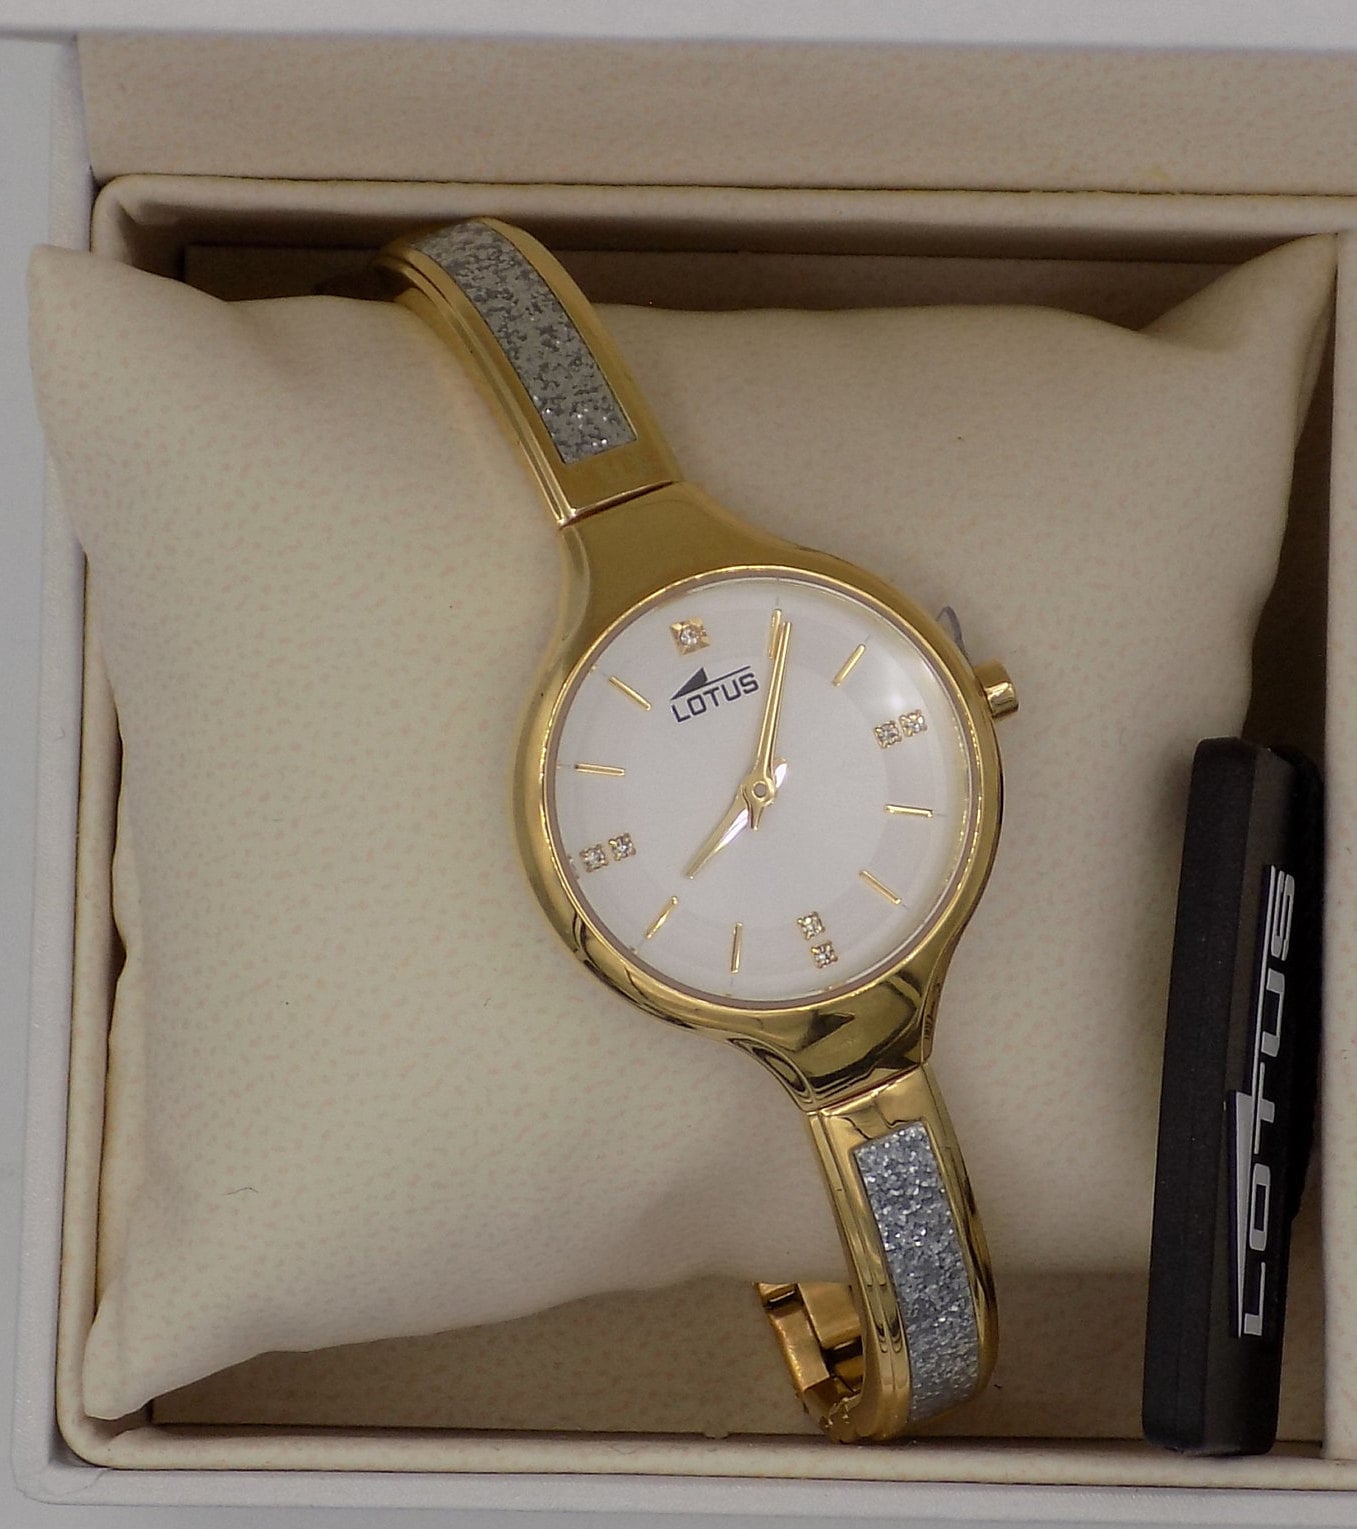 Compra Ahora: Reloj Lotus 18729/1 IP Dorado con Doble Correa para Mujer